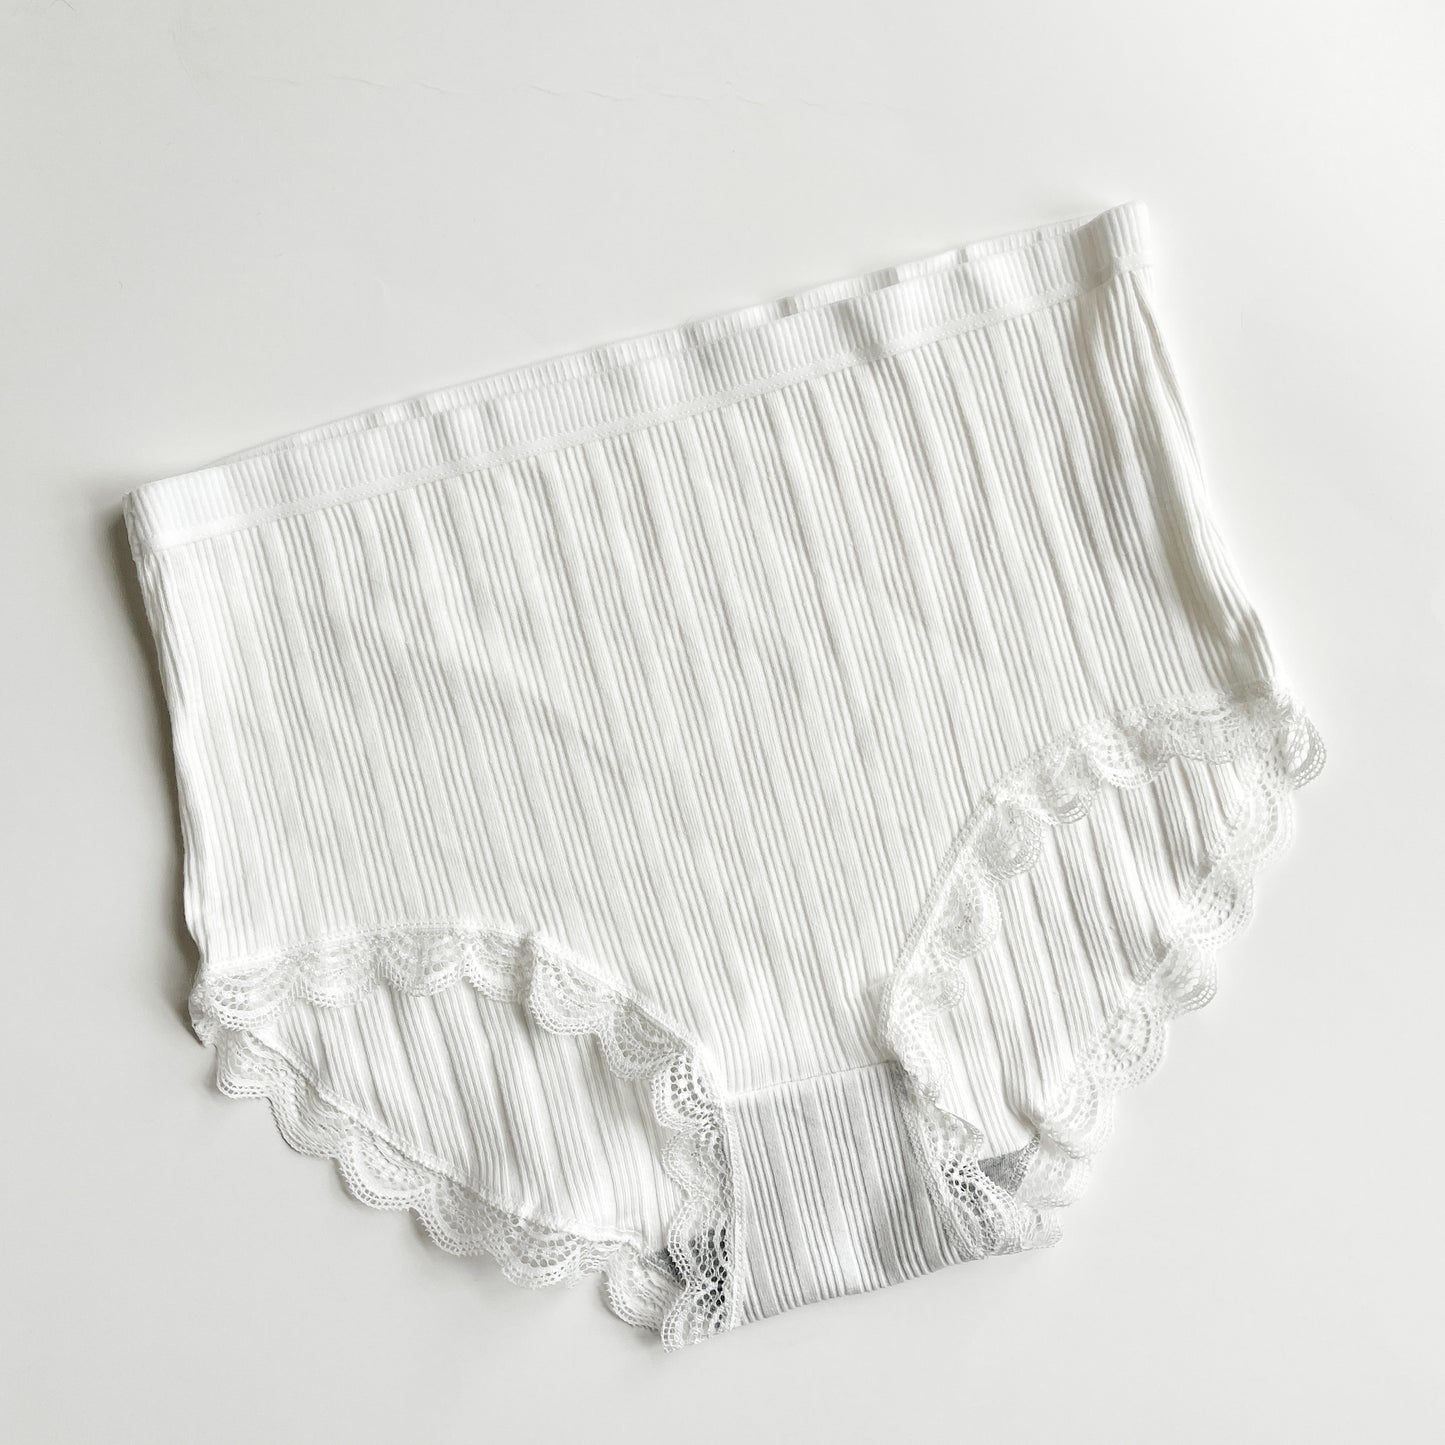 SAYFUT Women's High Waist Lace Print Cotton Solid Underwear Full